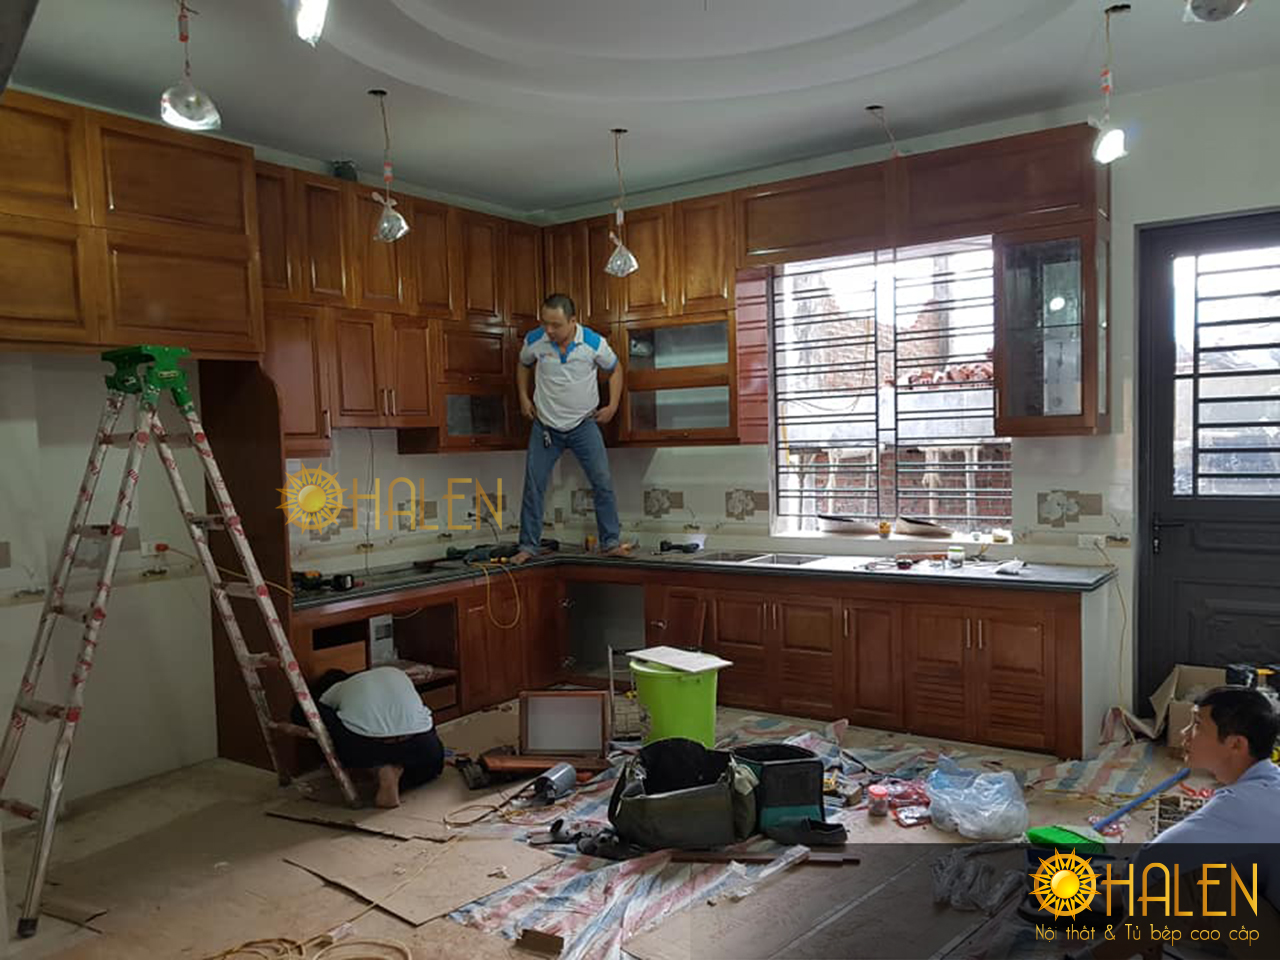 Thợ thi công của OHALEN đang tiến hành lắp đặt tủ bếp cho khách hàng tại Minh Khai